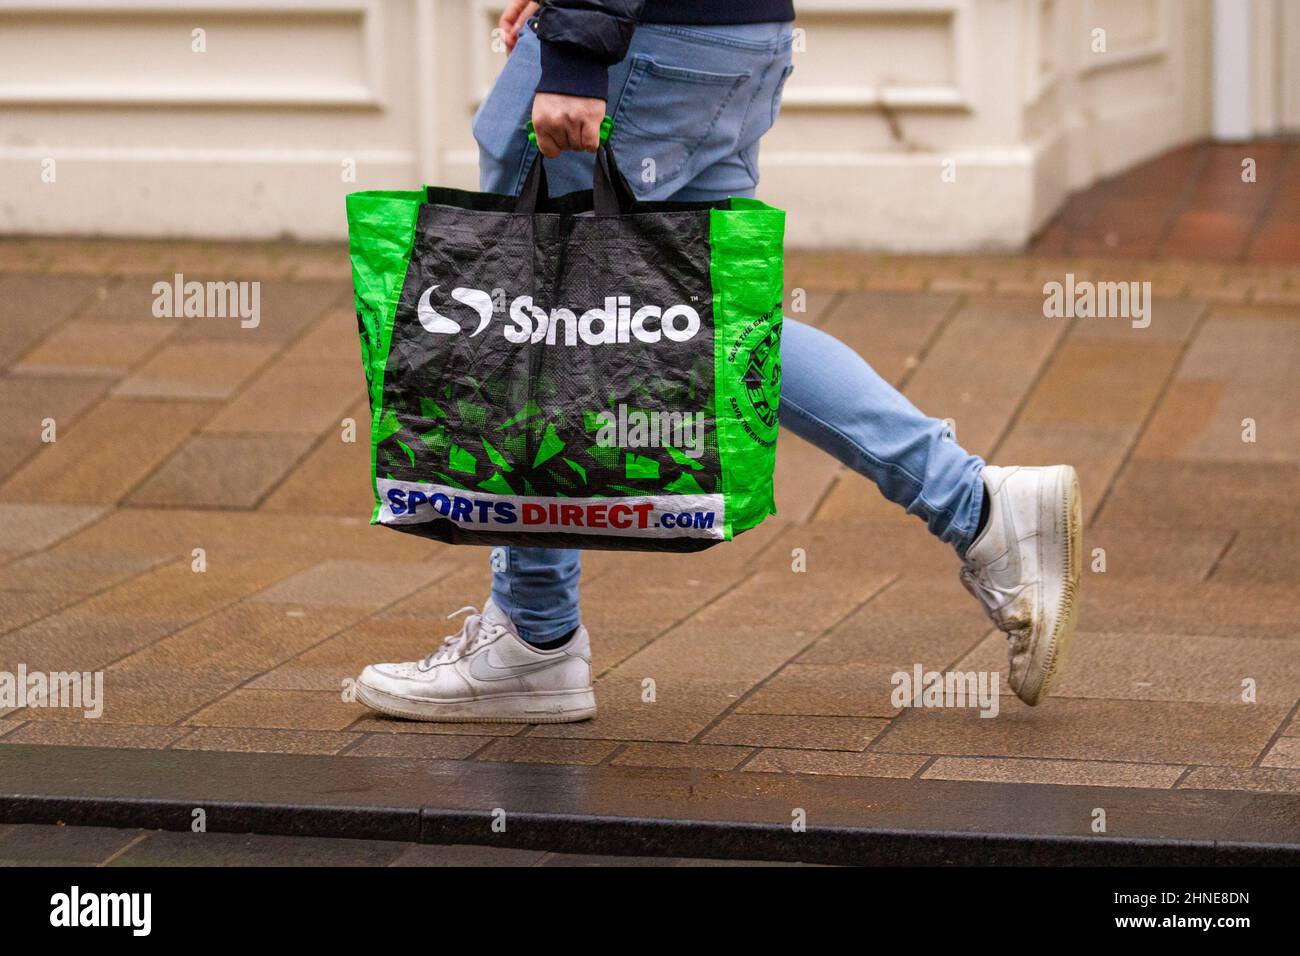 Sondico Strike Firm Ground Fußballschuhe; Sports Direct wiederverwendbare  Sandico-Taschen aus 100 % recyceltem Kunststoff für Life, Fishergate,  Preston, Großbritannien Stockfotografie - Alamy